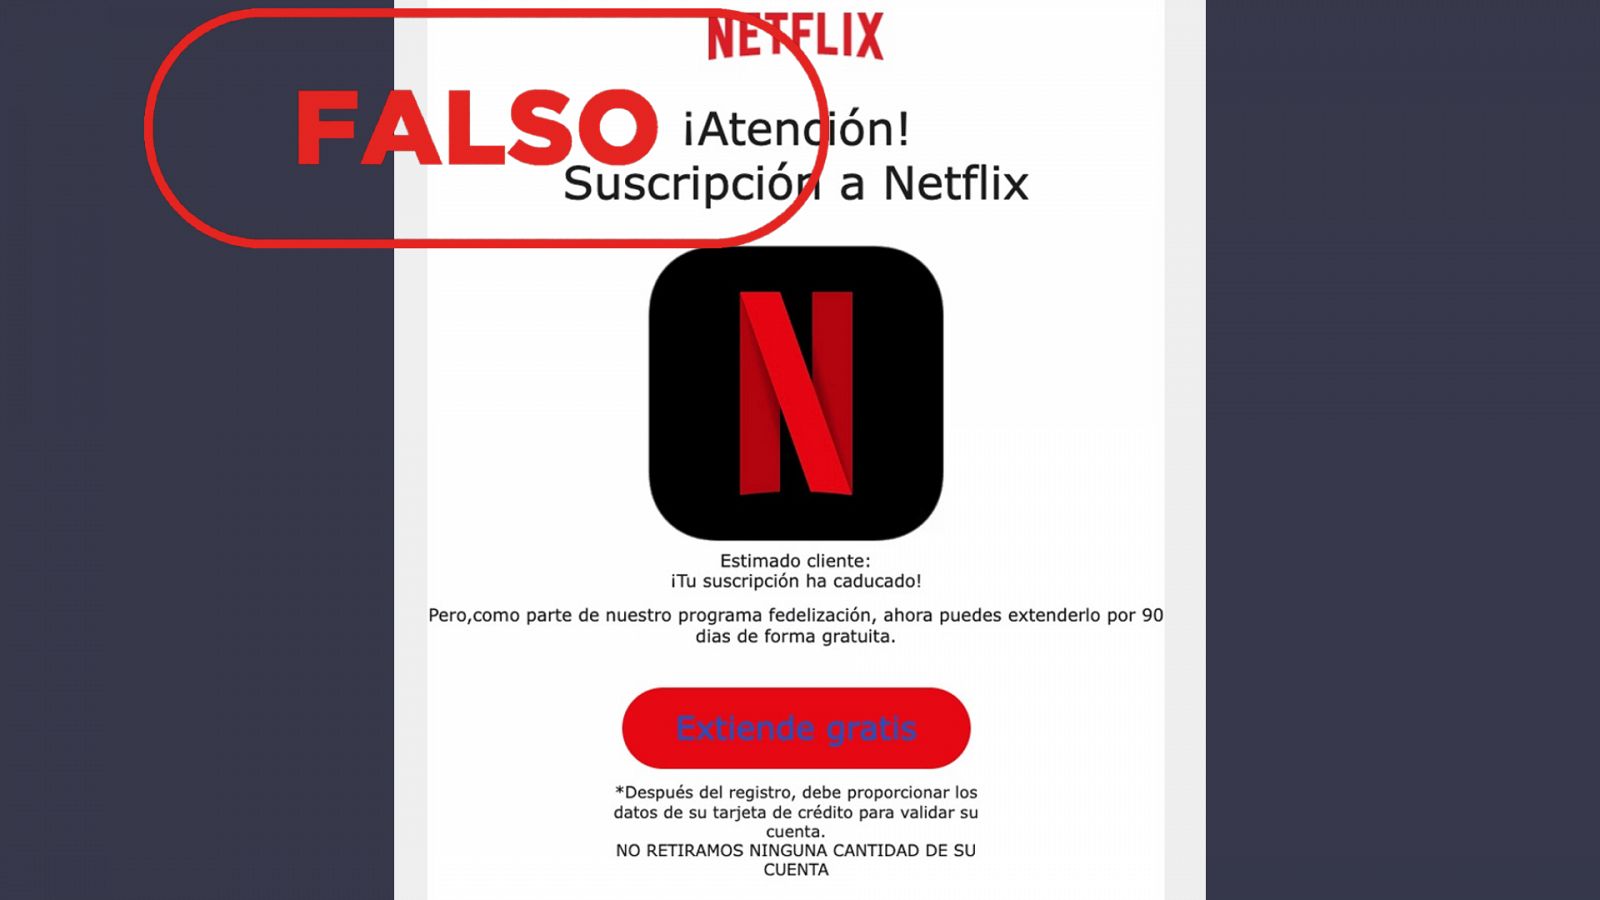 Captura del correo electrónico fraudulento que suplanta a Netflix para alertar de una falsa suscripción caducada. Con el sello falso en rojo